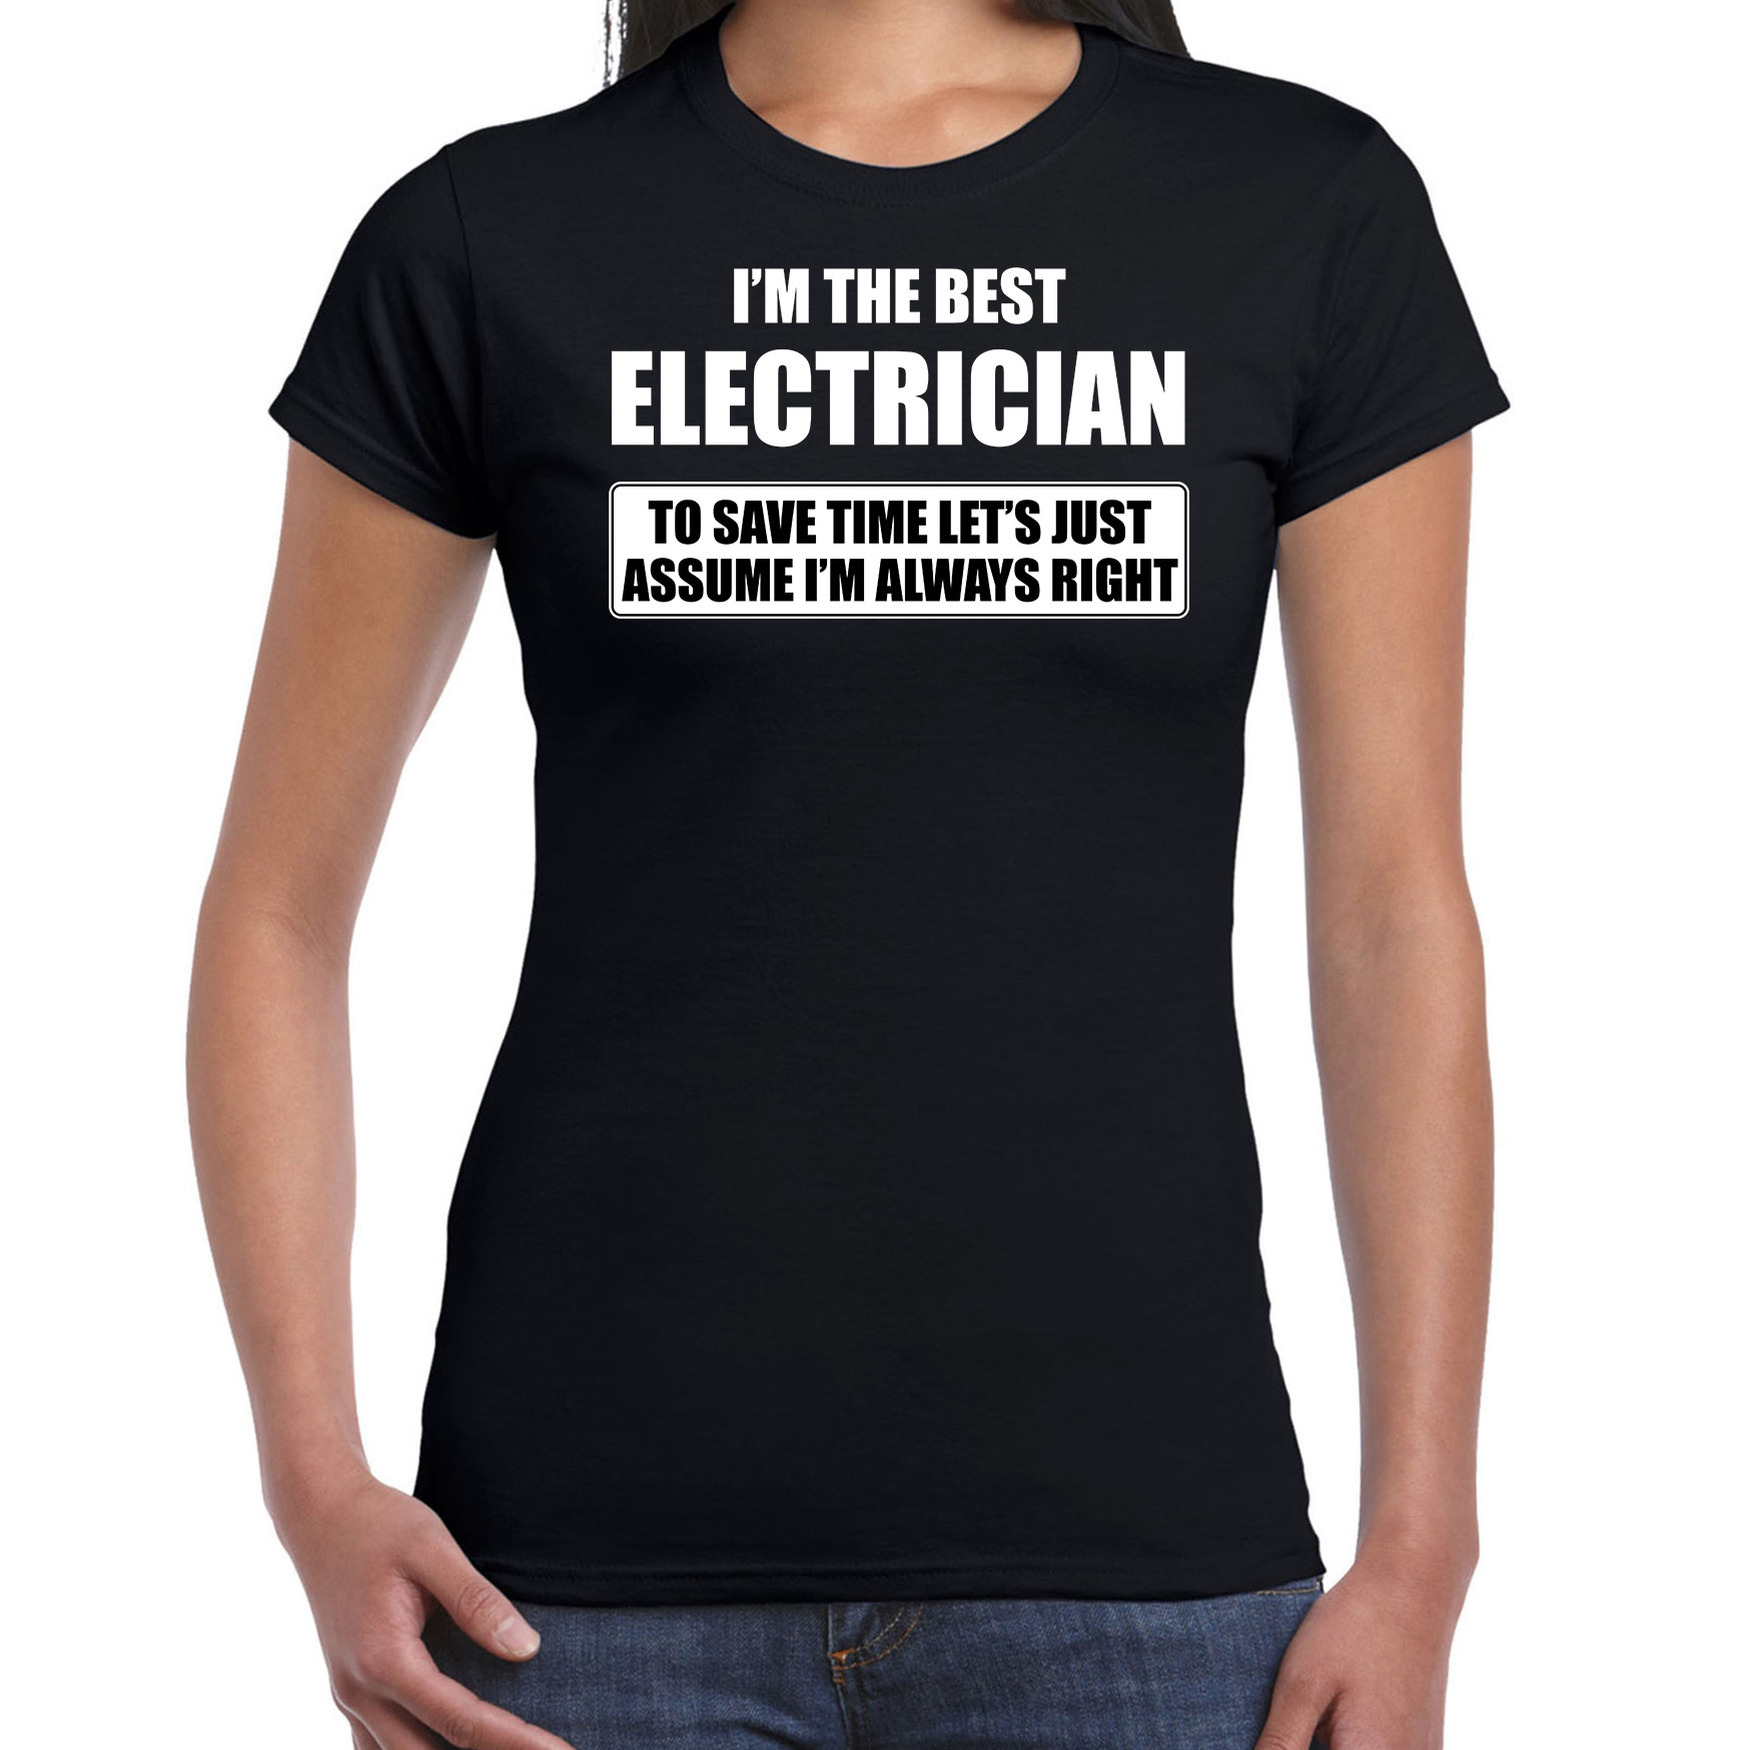 I'm the best electrician t-shirt zwart dames De beste elektricien cadeau